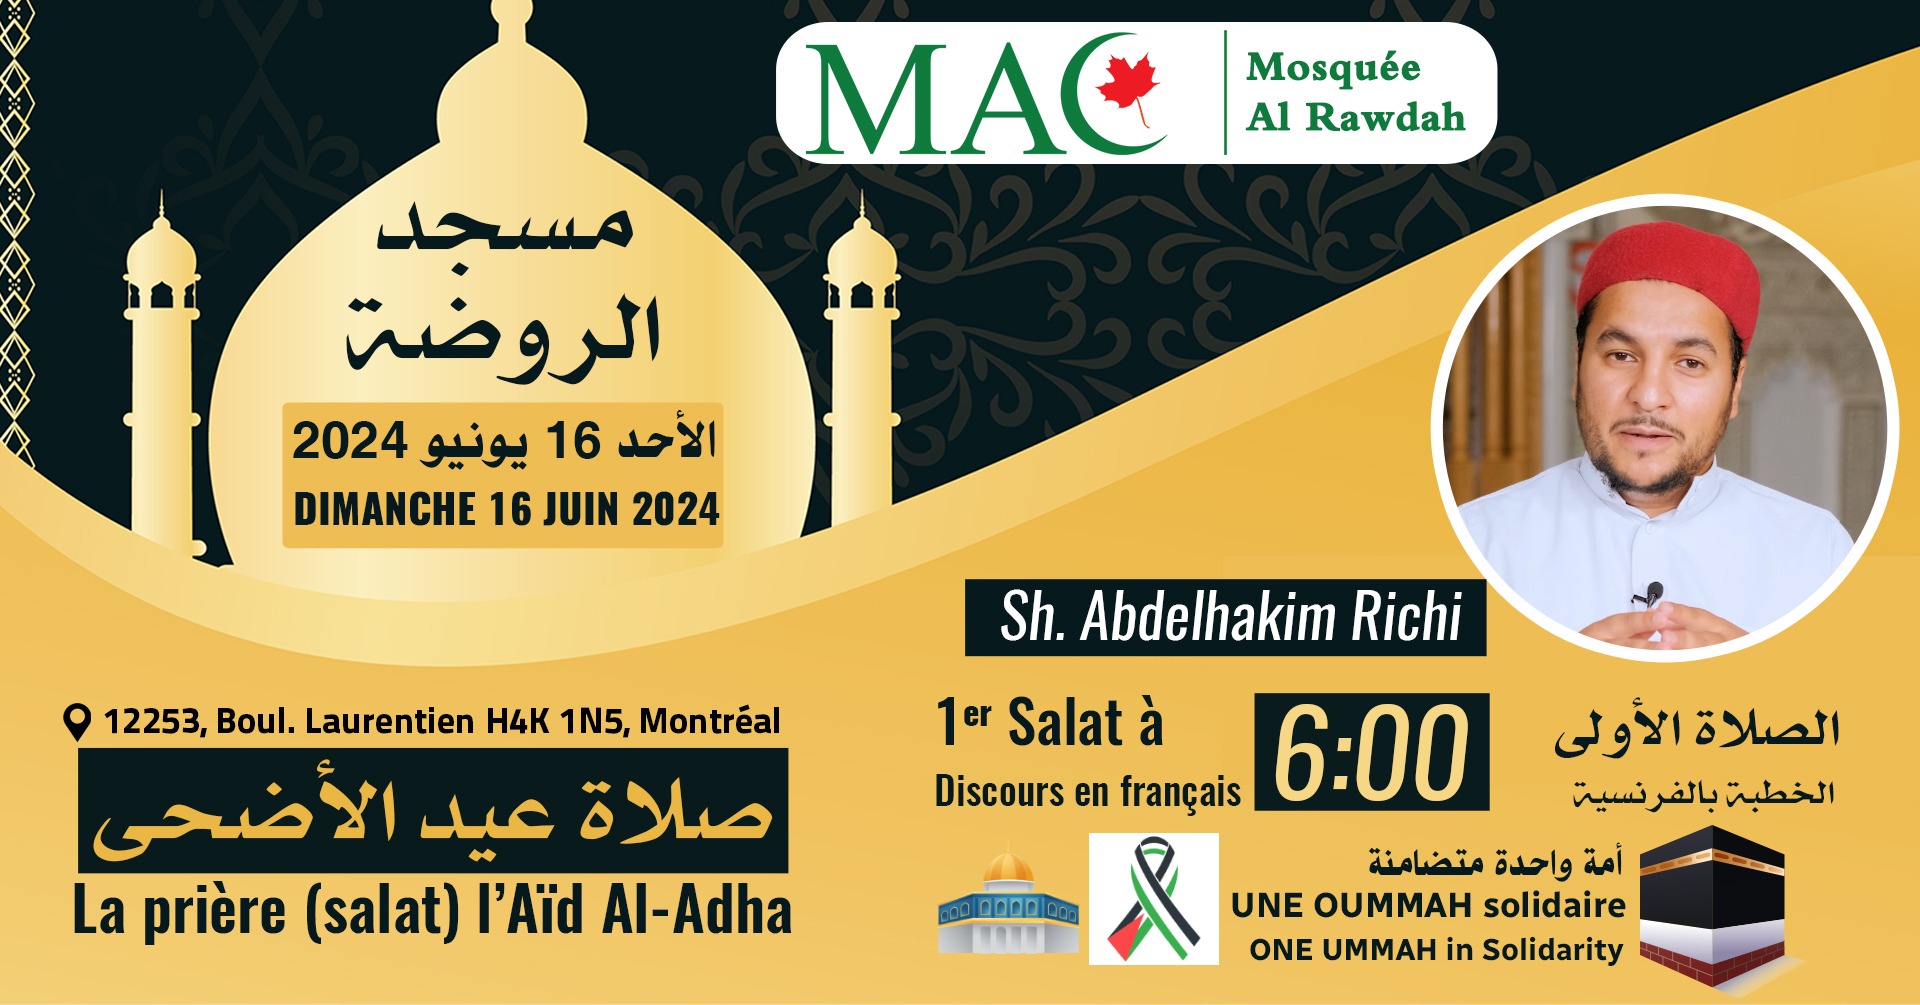 La première prière à 6 :00 en français, Eid Al-Adha (Fête du sacrifice), 16 juin 2024